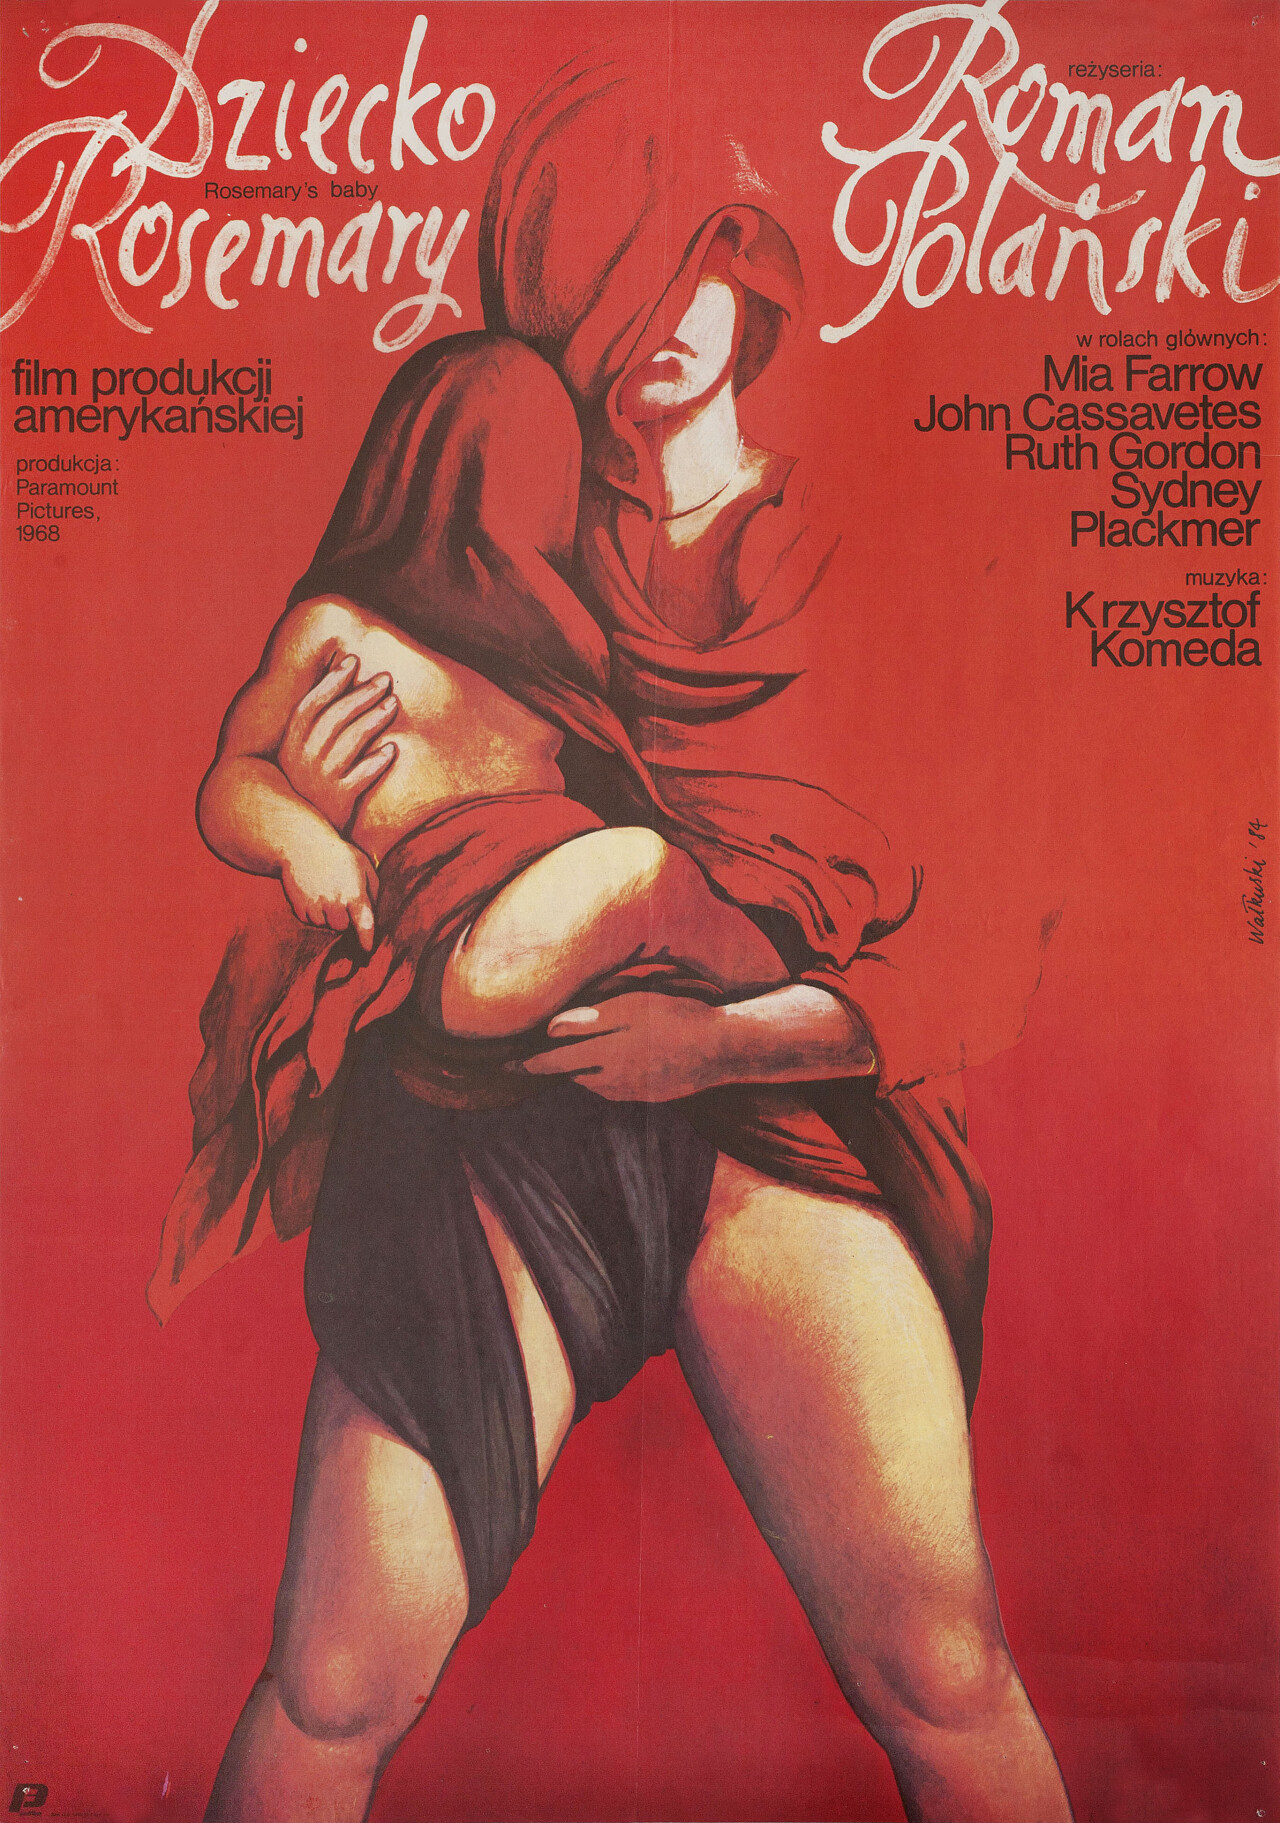 Ребенок Розмари (Rosemarys Baby, 1968), режиссёр Роман Полански, польский постер к фильму, автор Веслав Валкуски (графический дизайн, 1984 год)